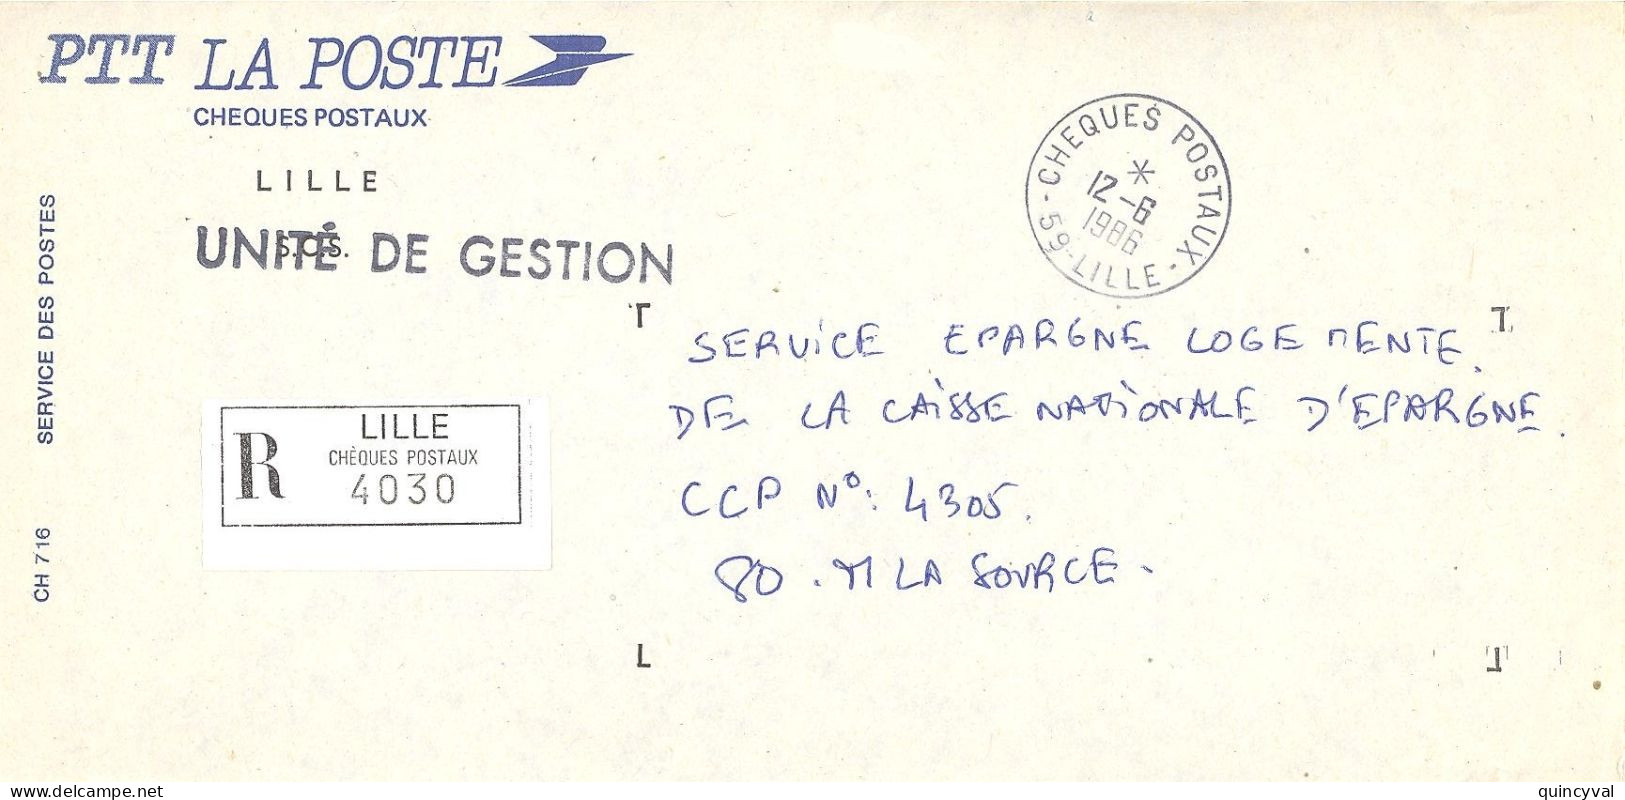 CHEQUES POSTAUX  59 LILLE Ob 12 6 1986 Lettre Enveloppe CCP Chèques Postaux RECOMMANDE UNITE De GESTION - Handstempels